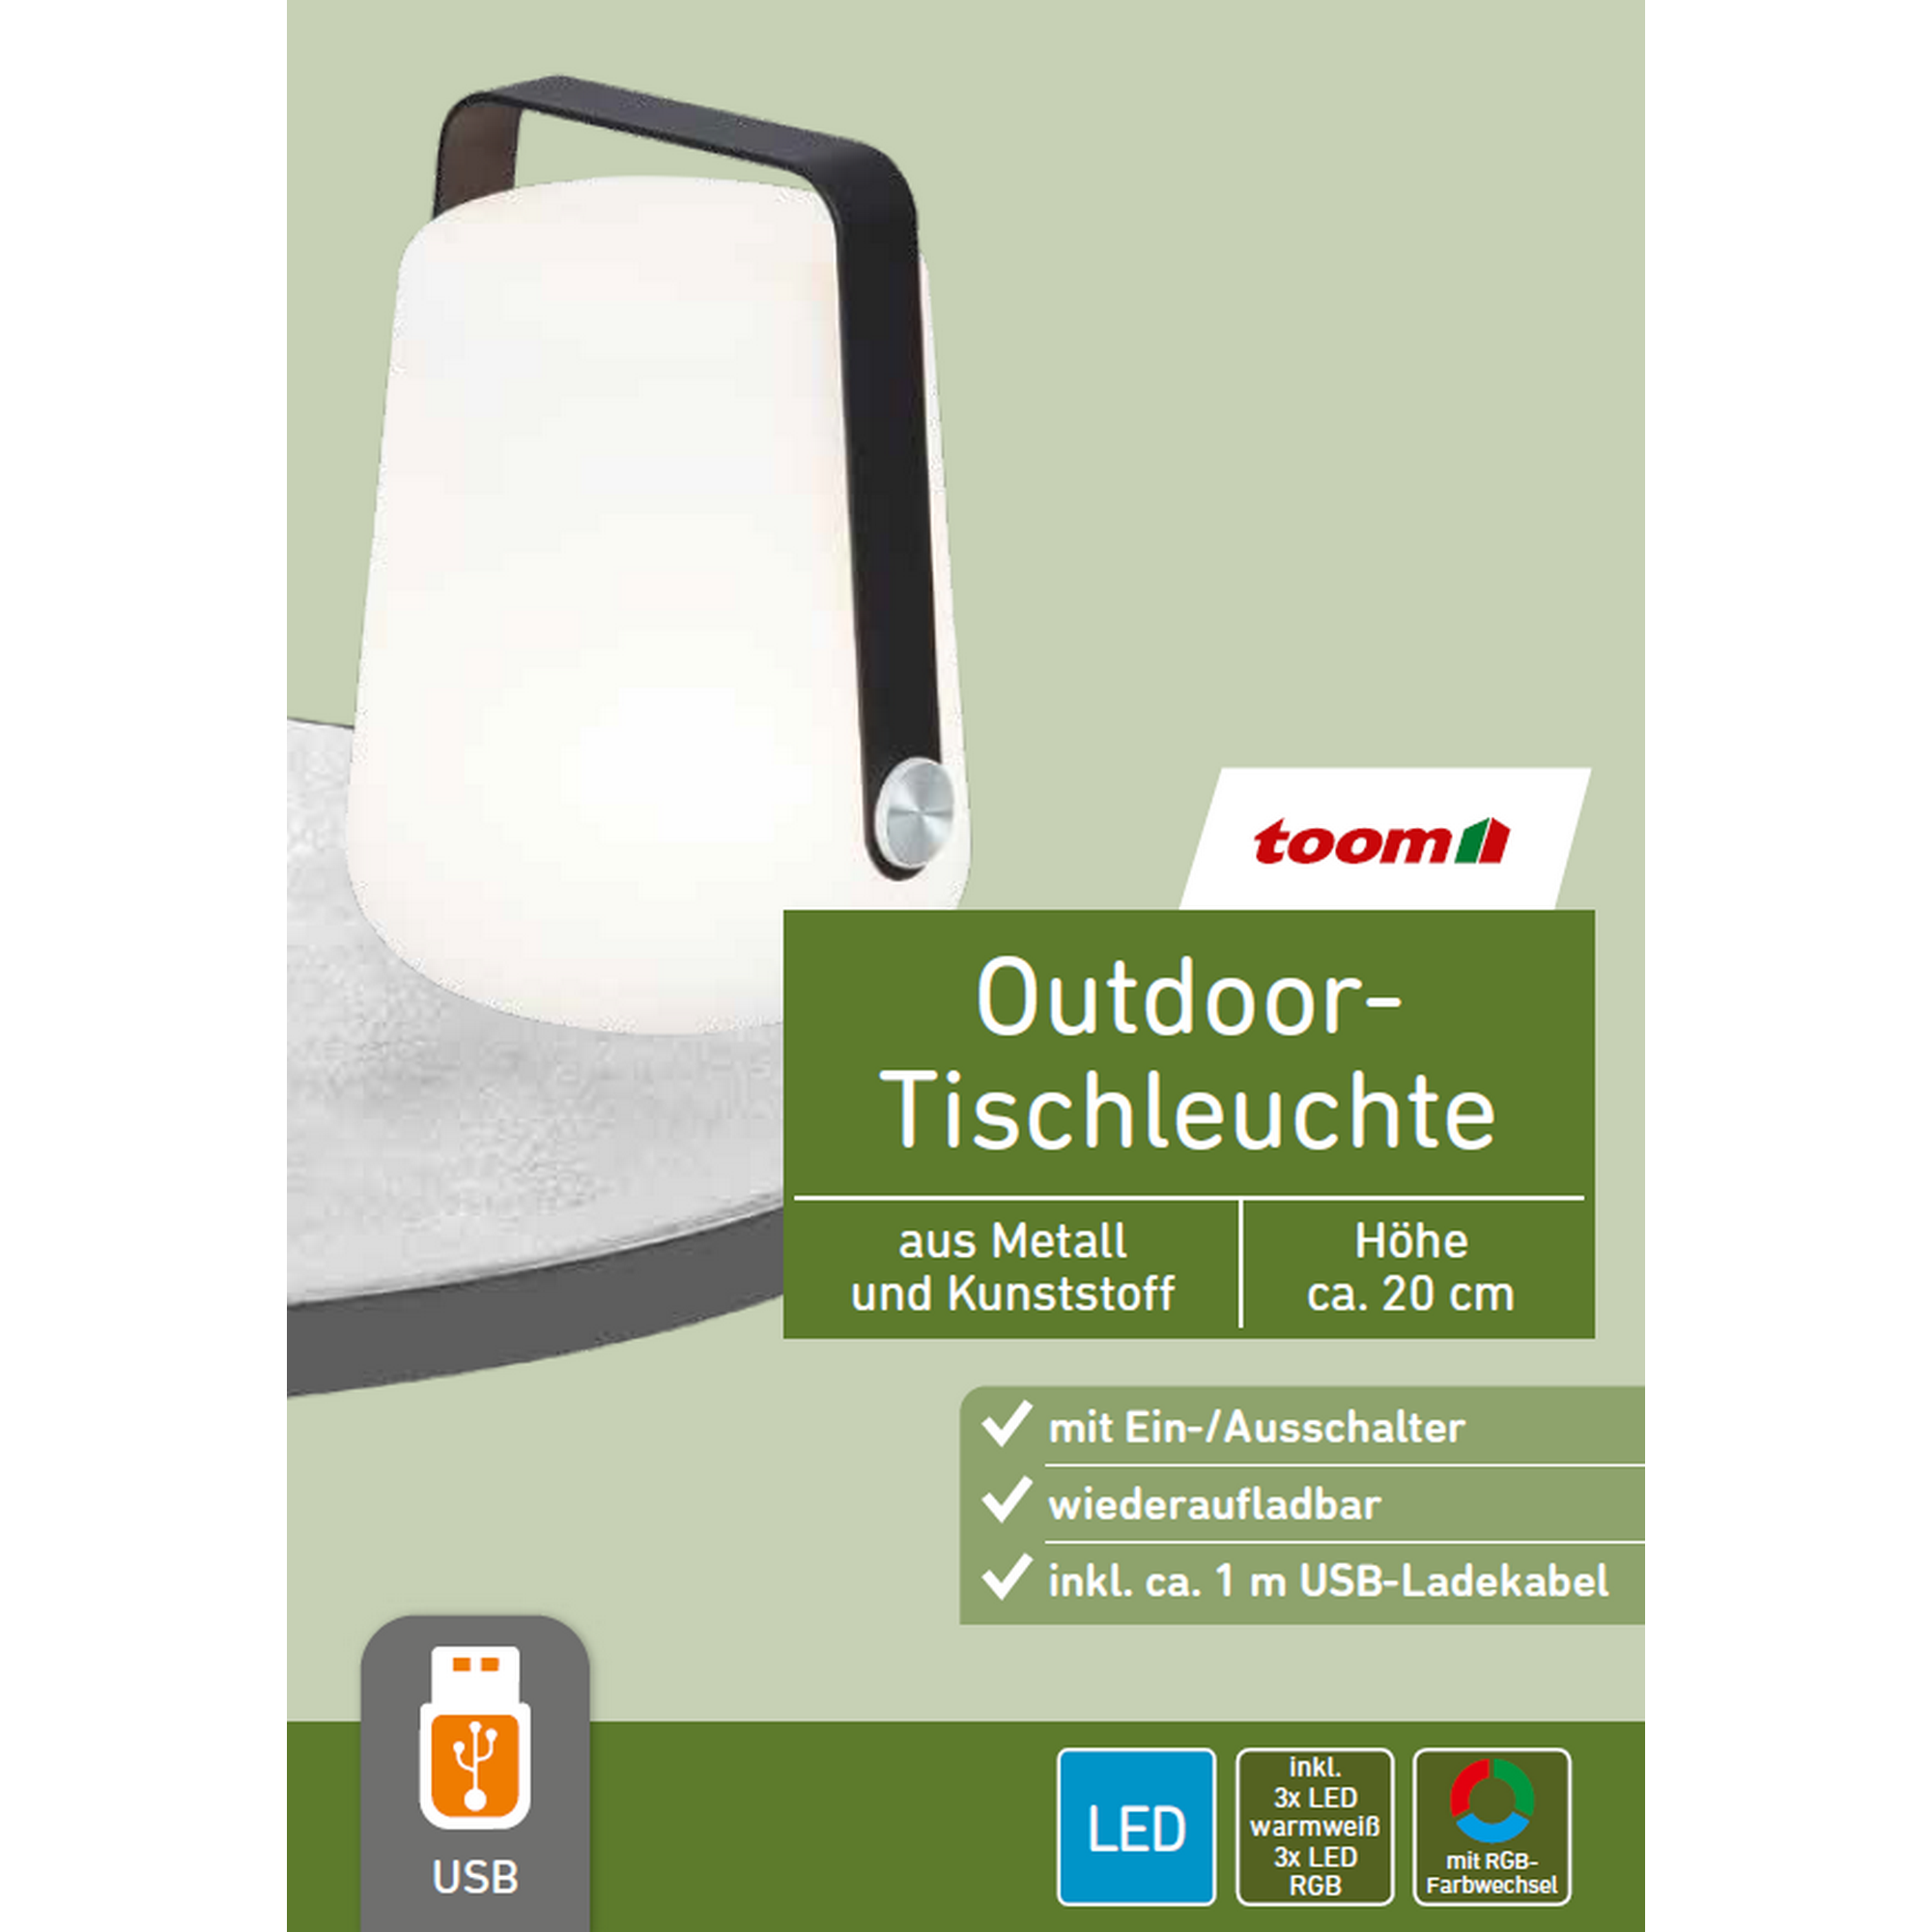 Outdoor-Tischleuchte schwarz/weiß Ø ca. 15,5 x 20 cm + product picture